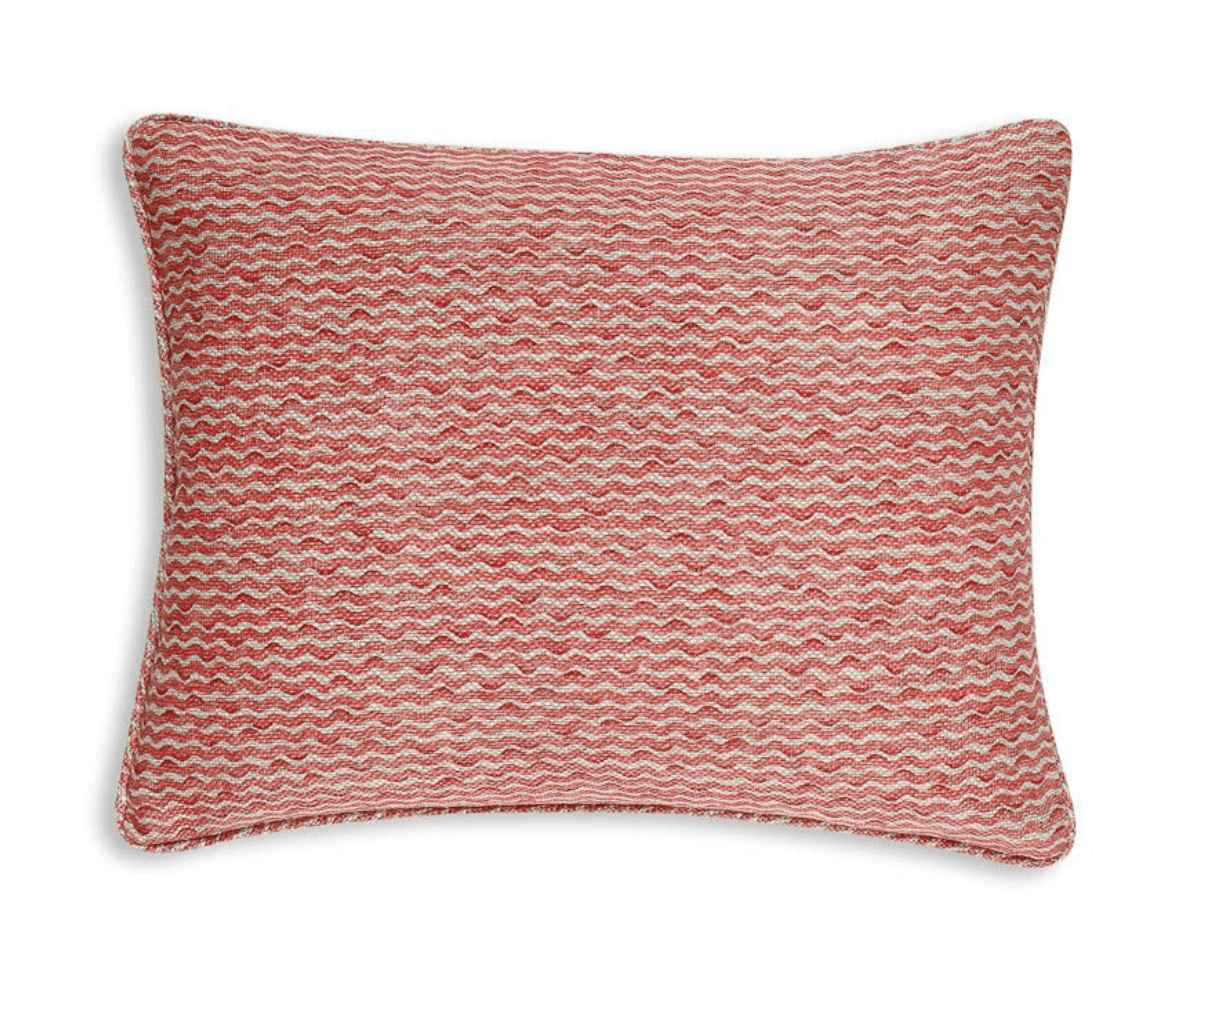 Fermoie Cushion in Red Popple